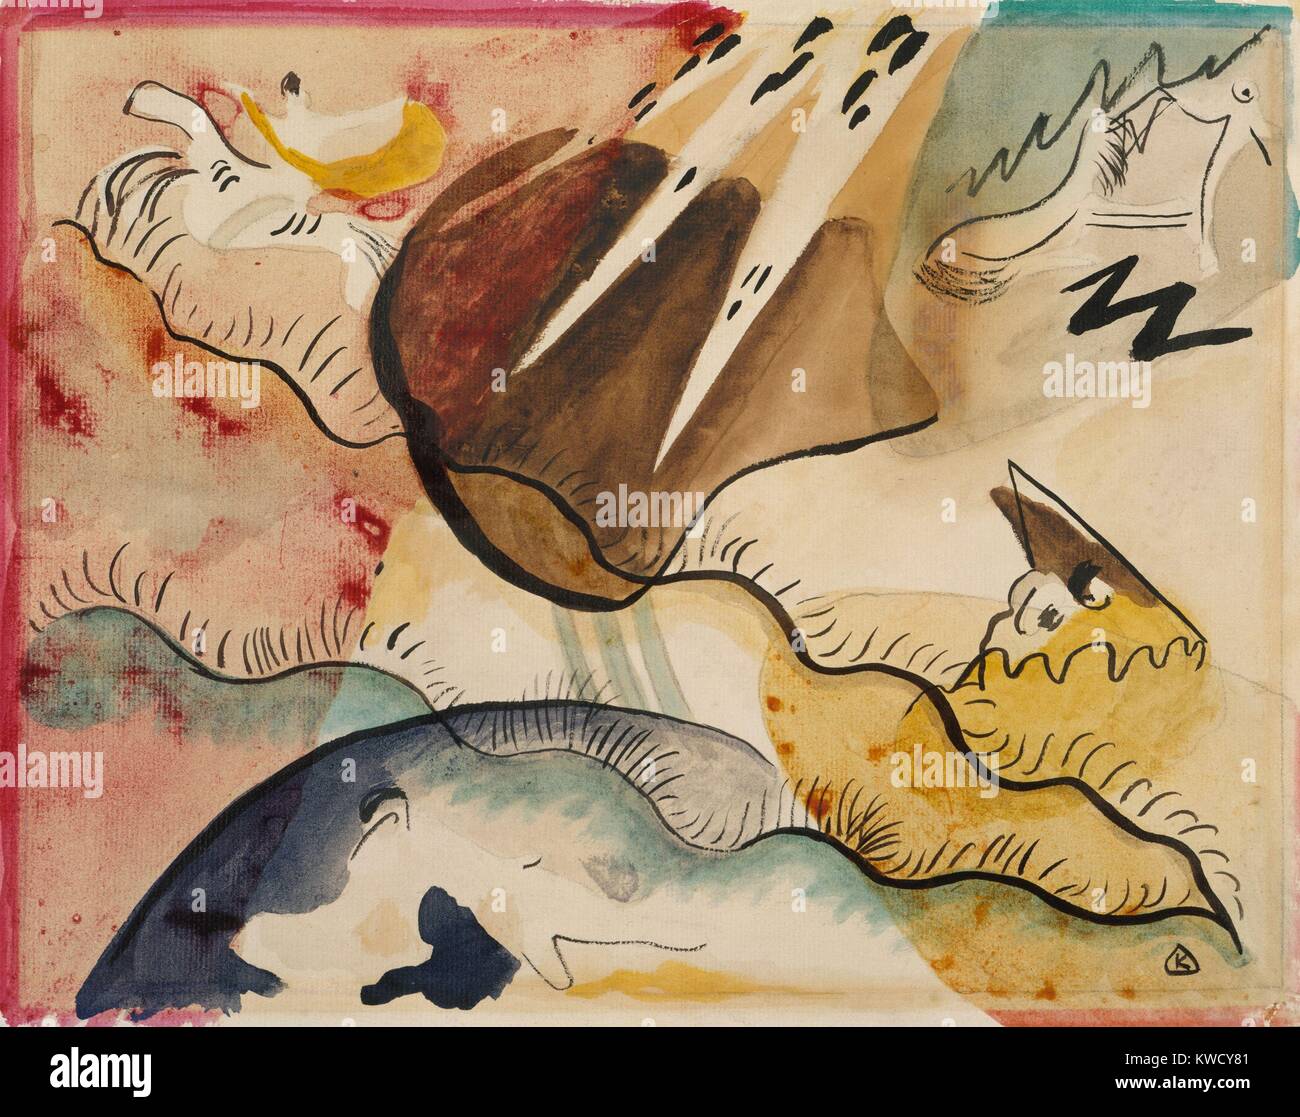 Regen Landschaft, die von Wassily Kandinsky, 1911, Russisch deutschen expressionistischen Zeichnung, Aquarell auf Papier. In dieser abstrakten Landschaft Malerei, der Künstler mit Form und Farbe Symbolik eine innere, emotionale und geistige Welt zu evozieren (BSLOC 2017 5 144) Stockfoto